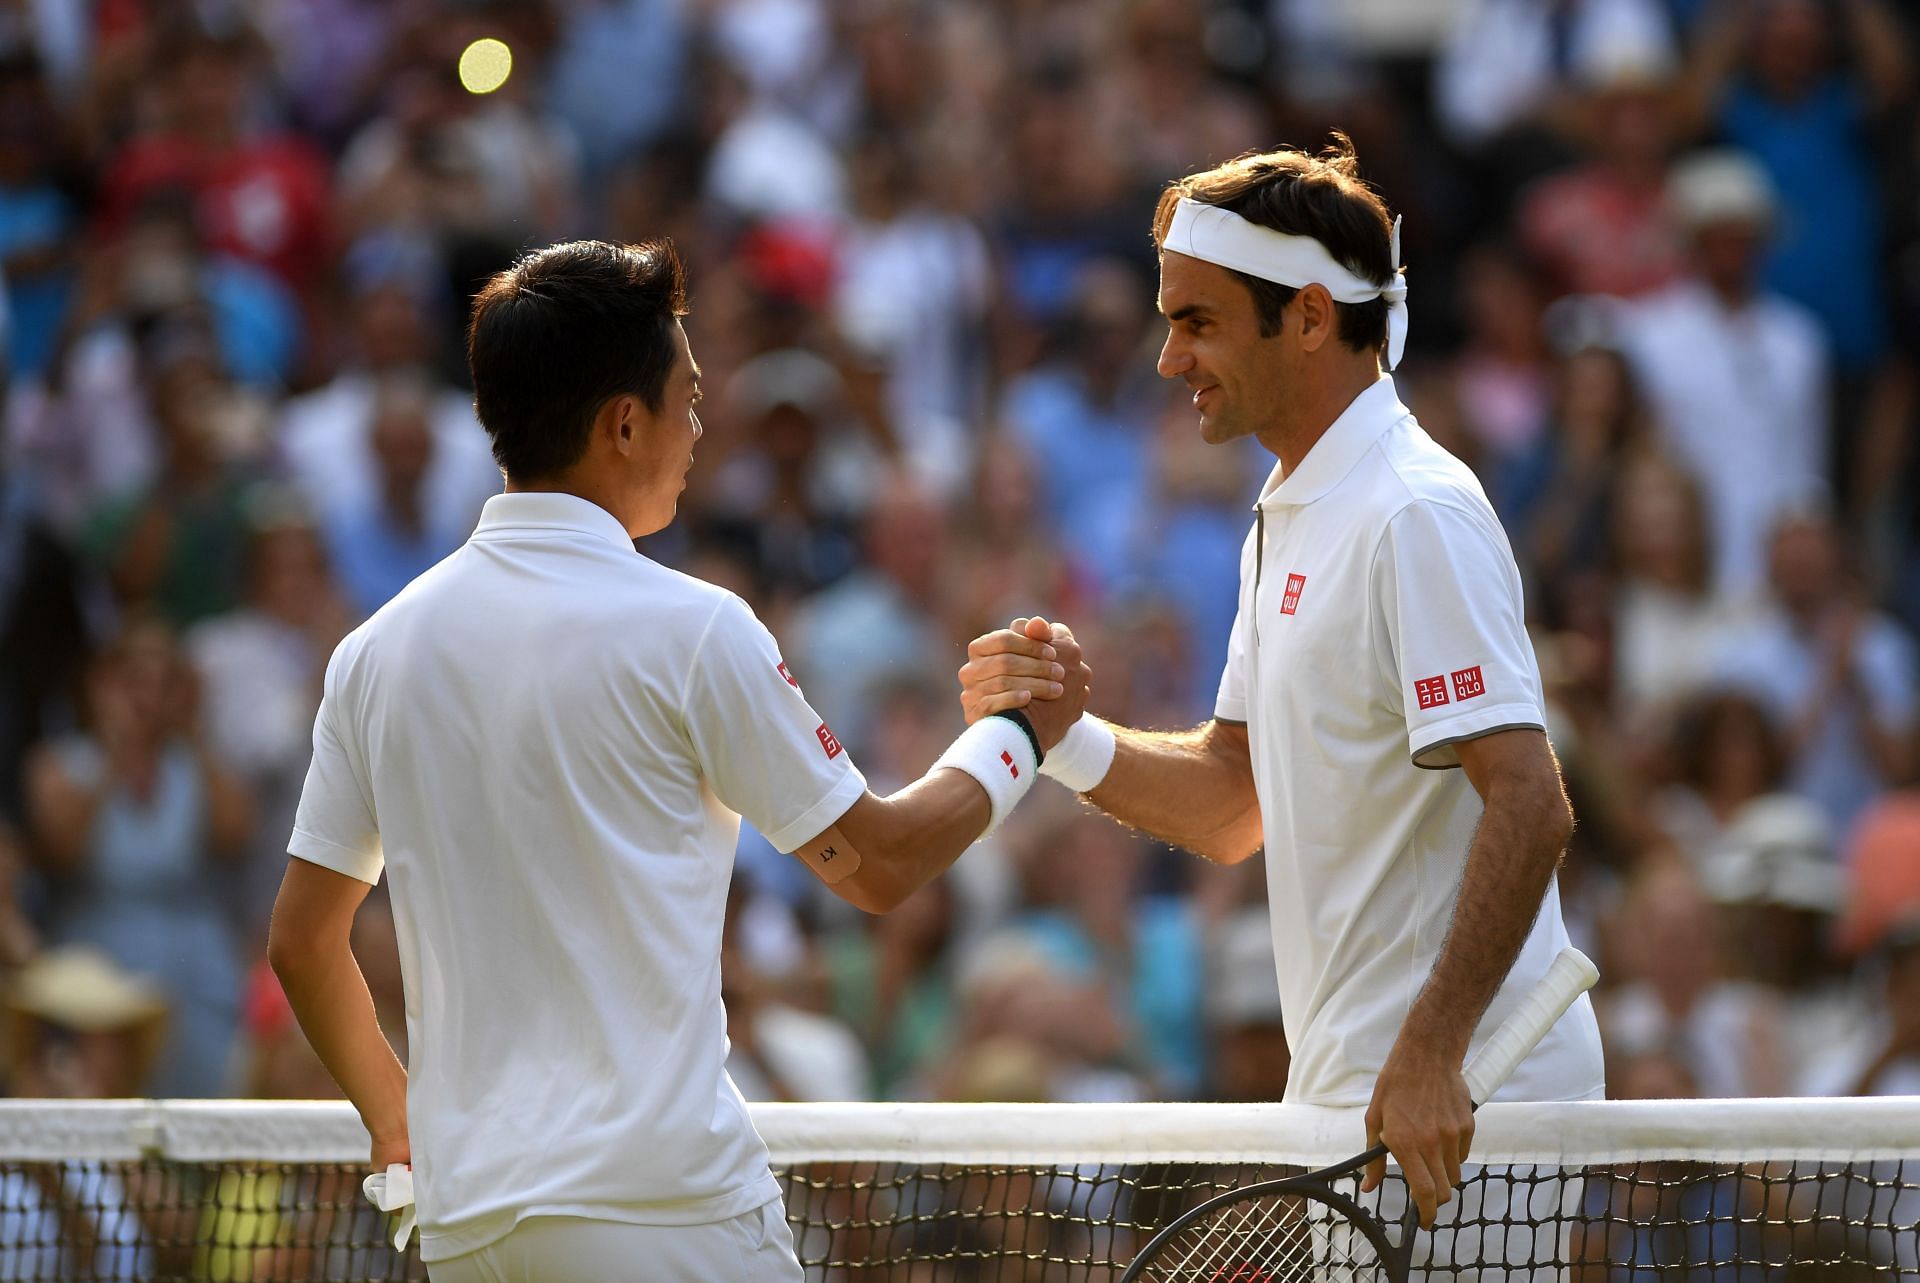 Kei Nishikori has faced Roger Federer 11 times on tour